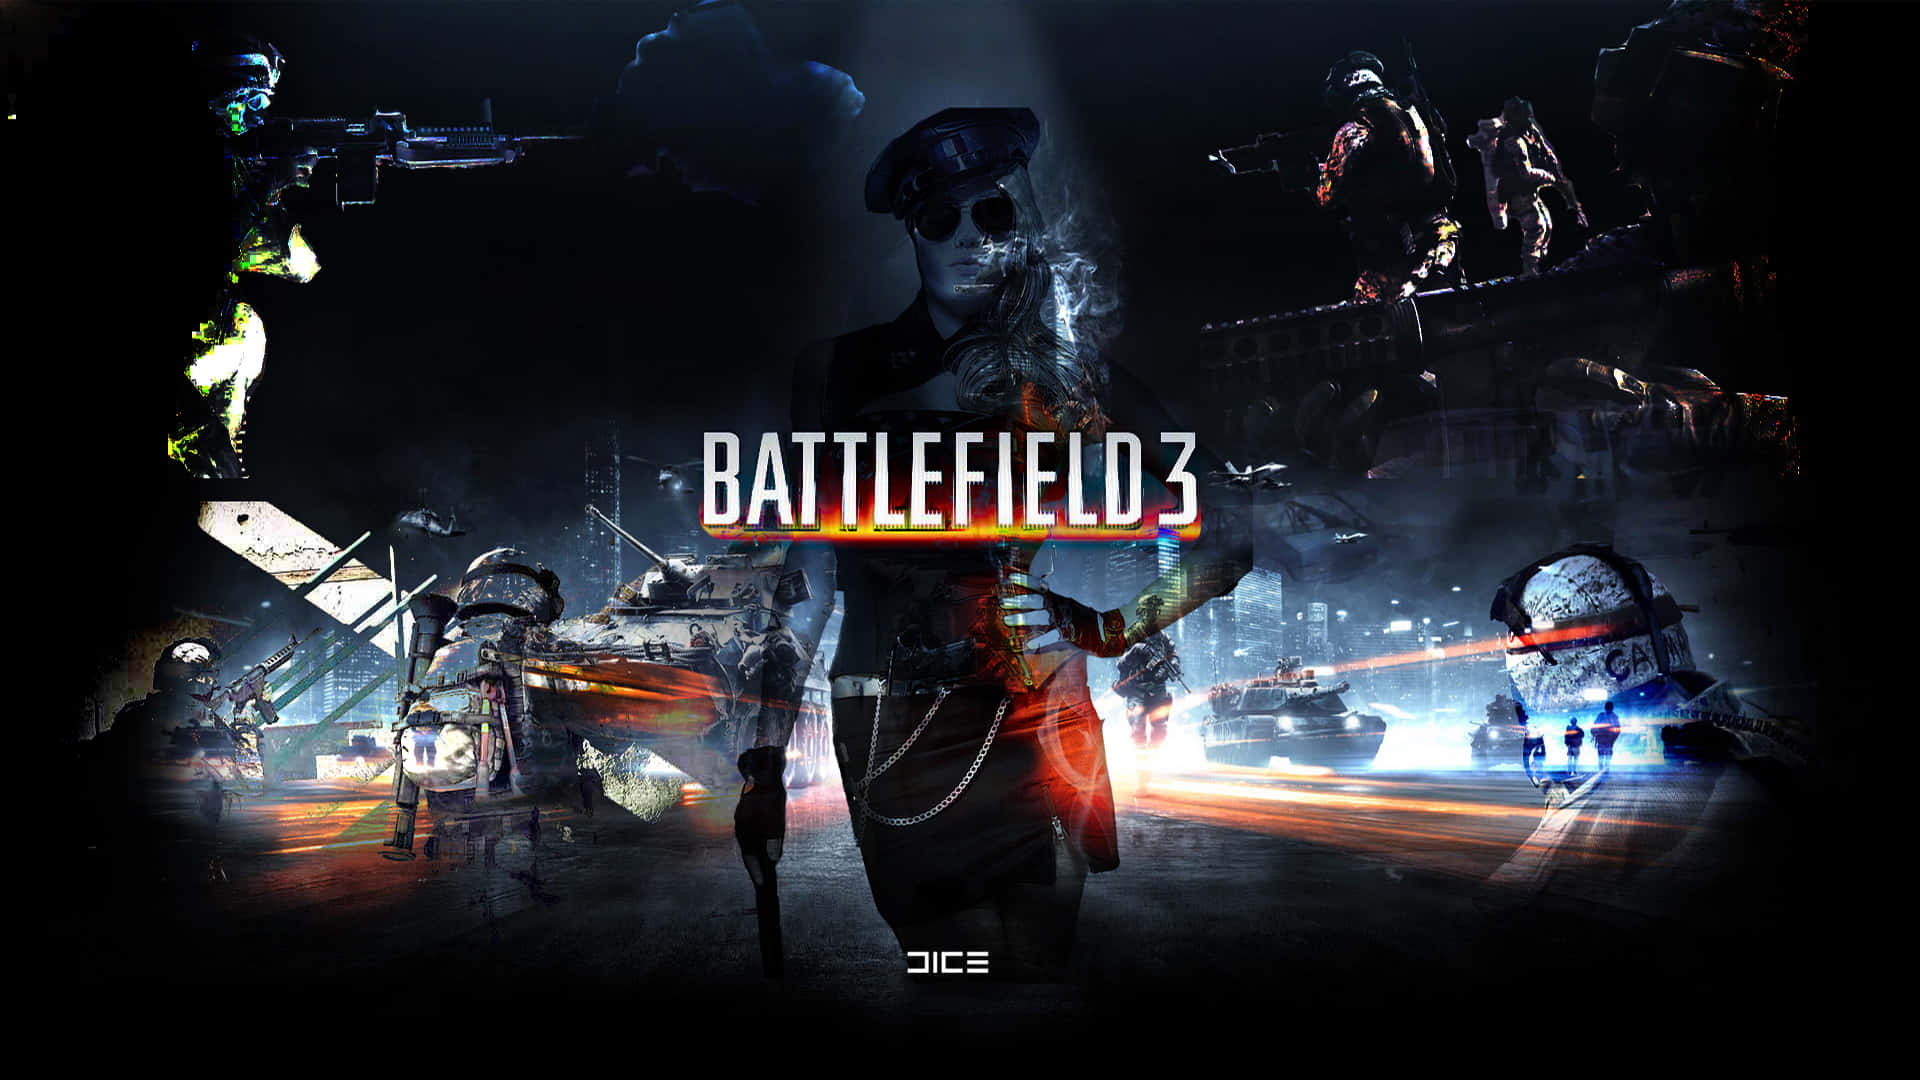 Battlefield 3 Wallpaper (HD) - Video Games Blogger